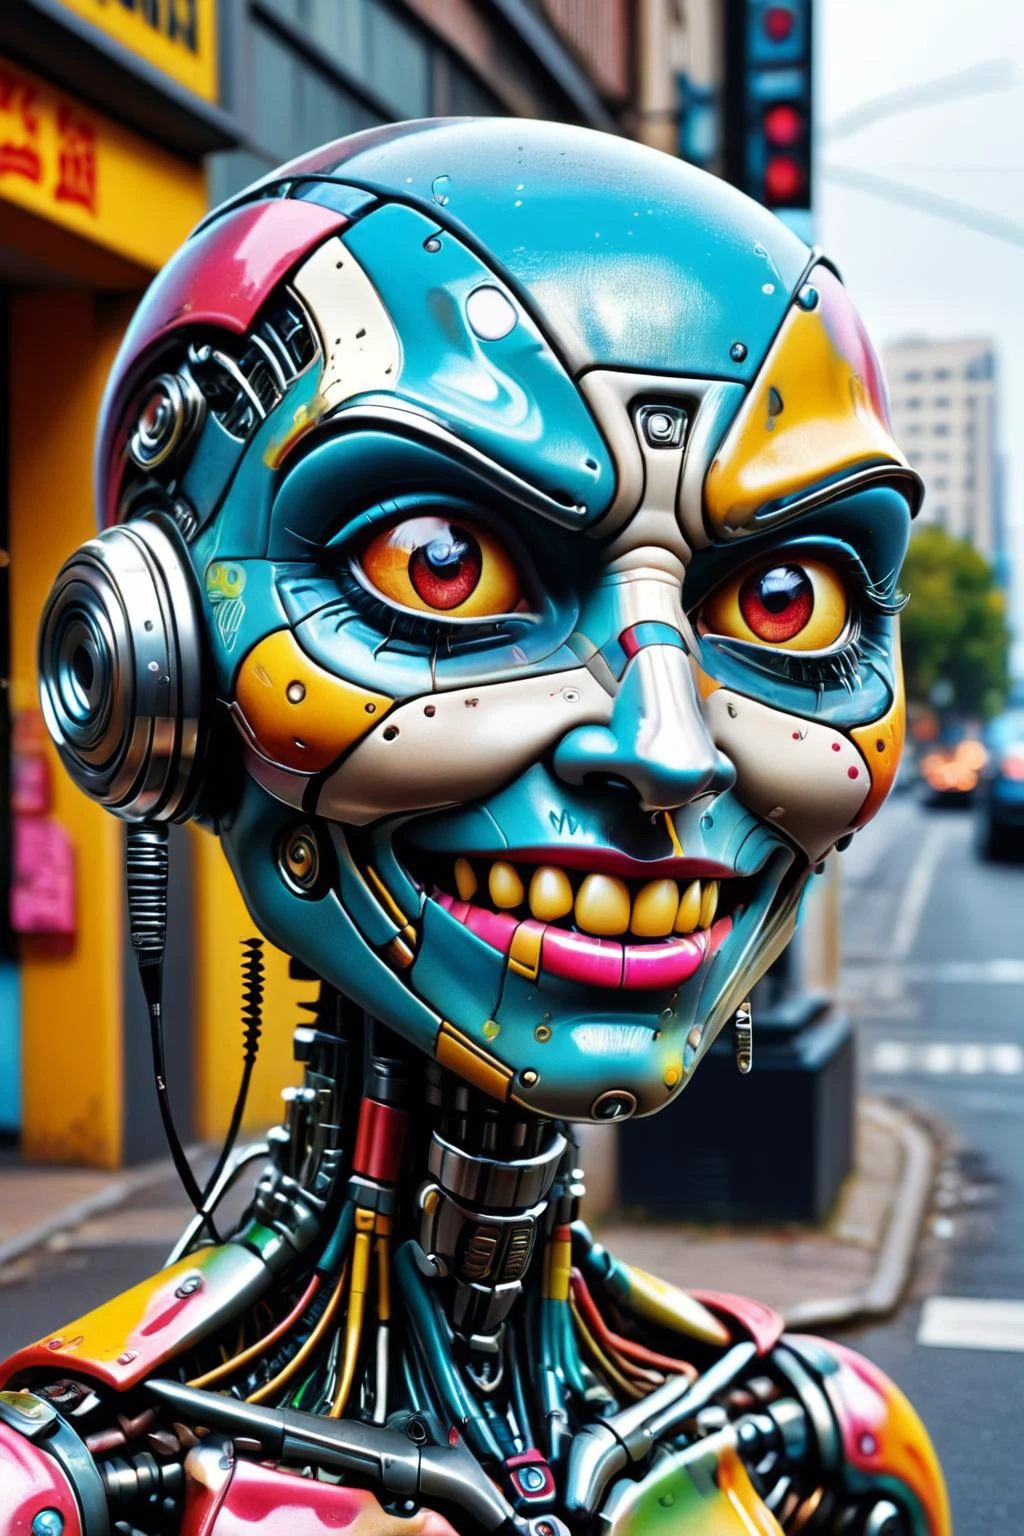 瘋狂龐克 c1bo 機器人的原始照片 (调皮地眨眼, 厚臉皮的表情) 每個街角都有監視器, 超細節, 超現實主義, 绚丽夺目的鲜艳油漆  ,  ais-彩色塑料